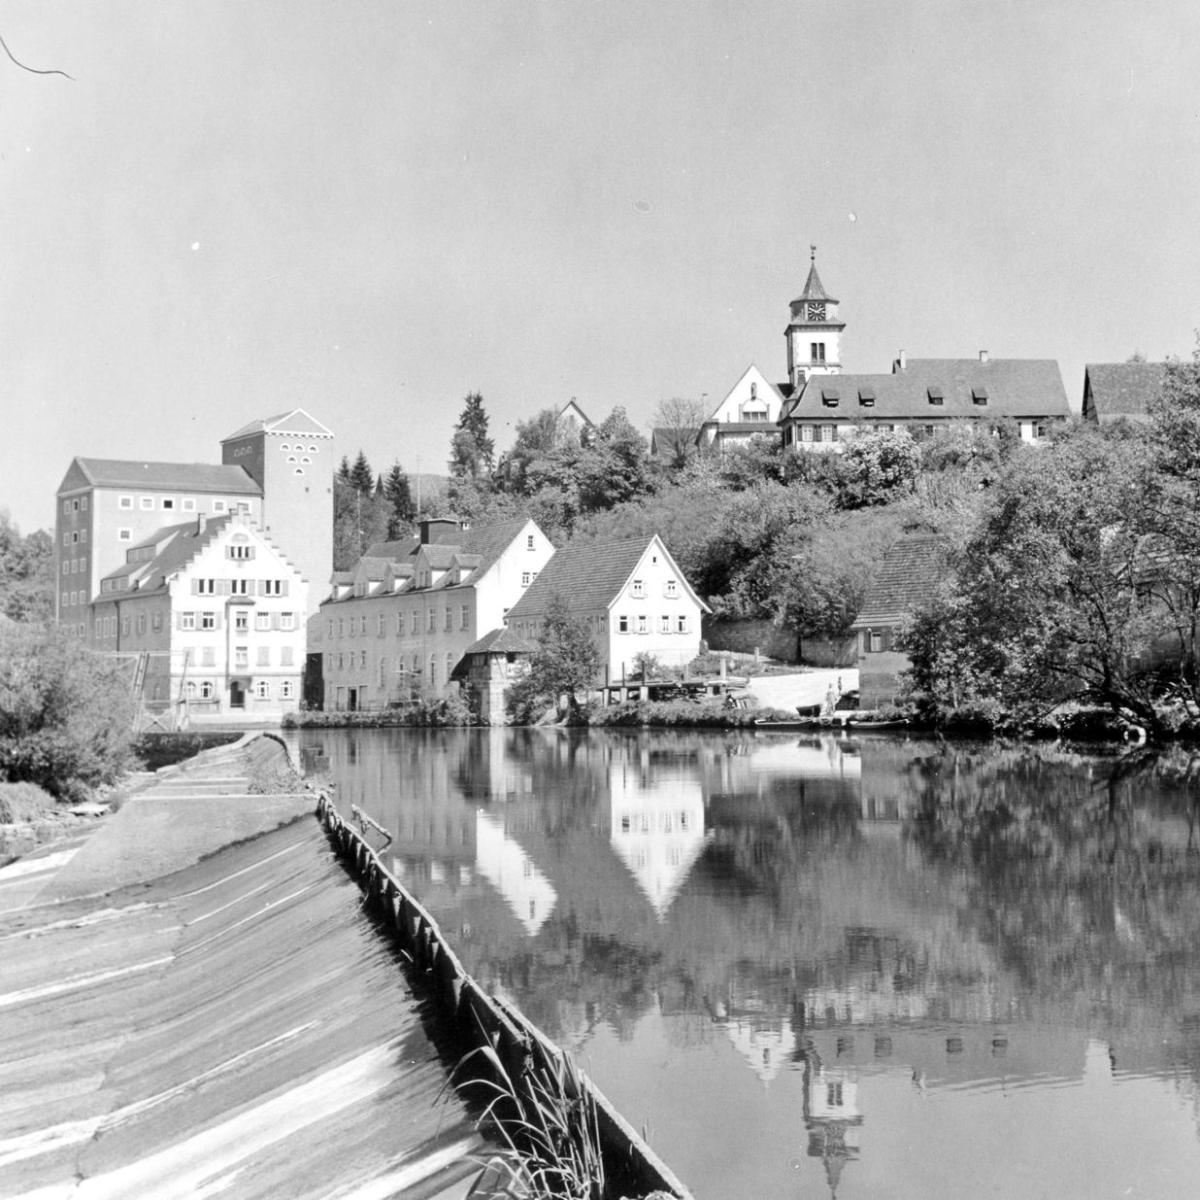 1963: Blick auf die Mühle (Quelle: Walter Brants)